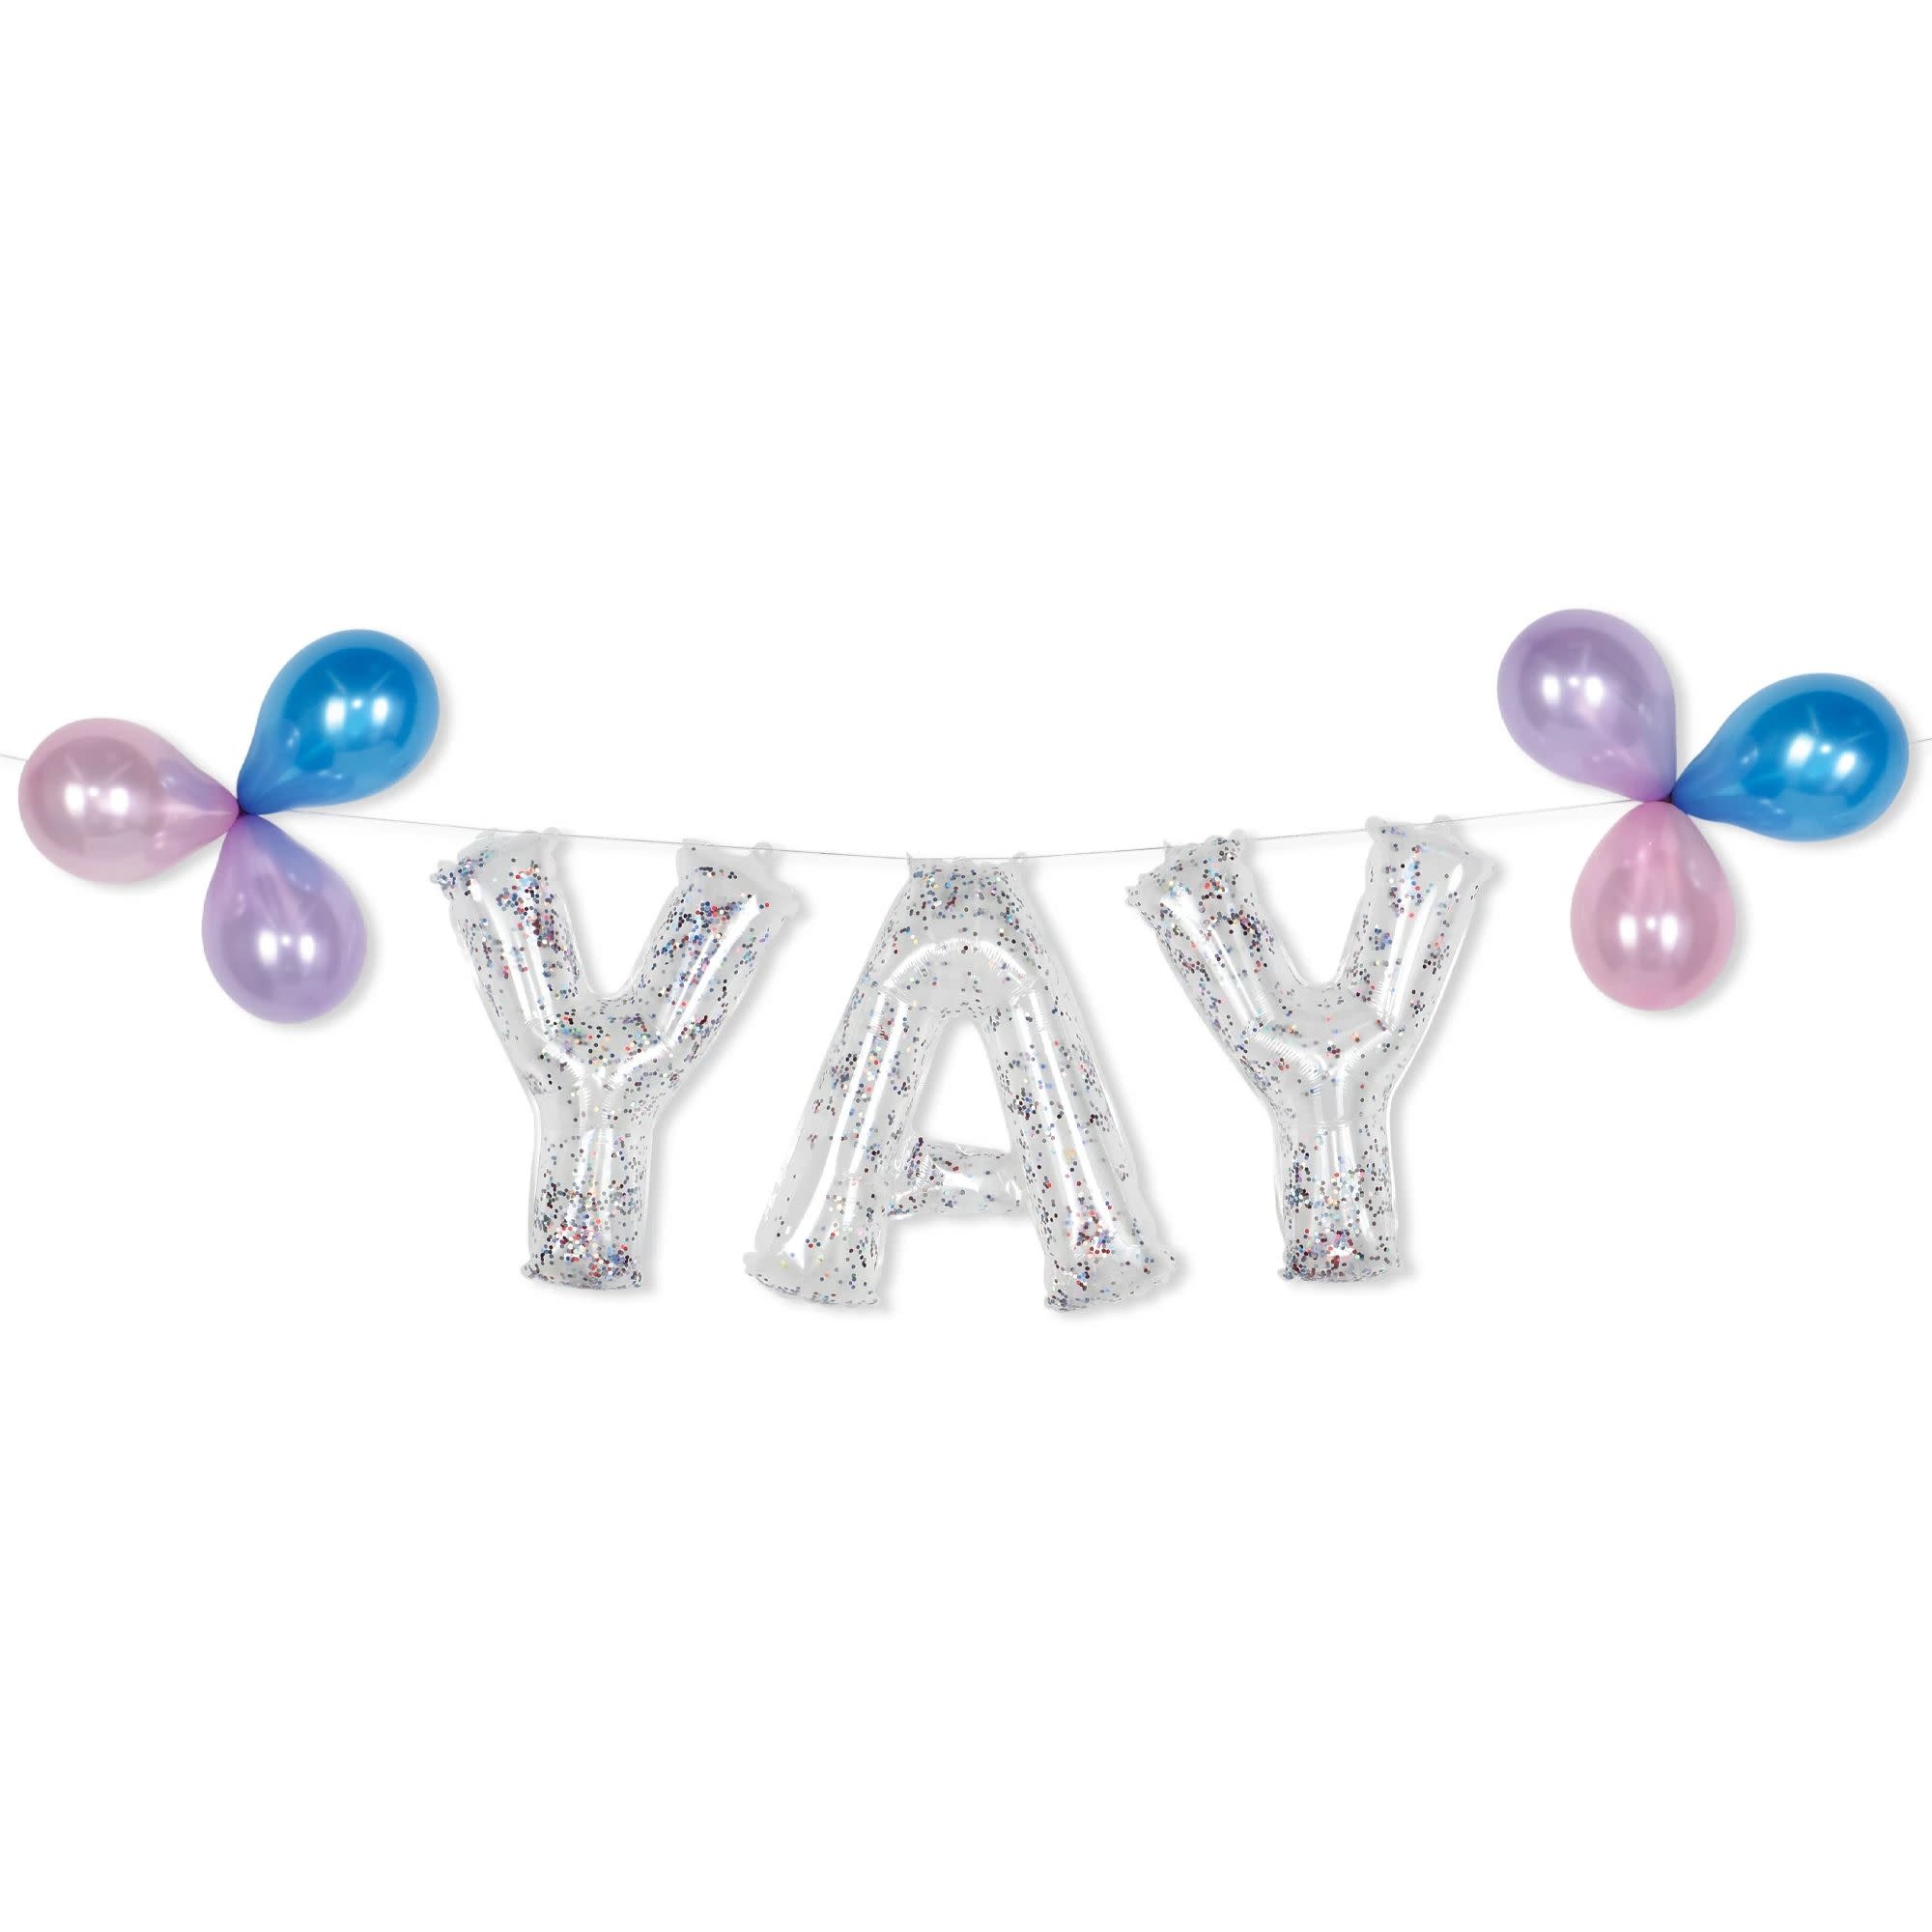 "Yay" Glitter Confetti Air Filled Balloon Banner Kit